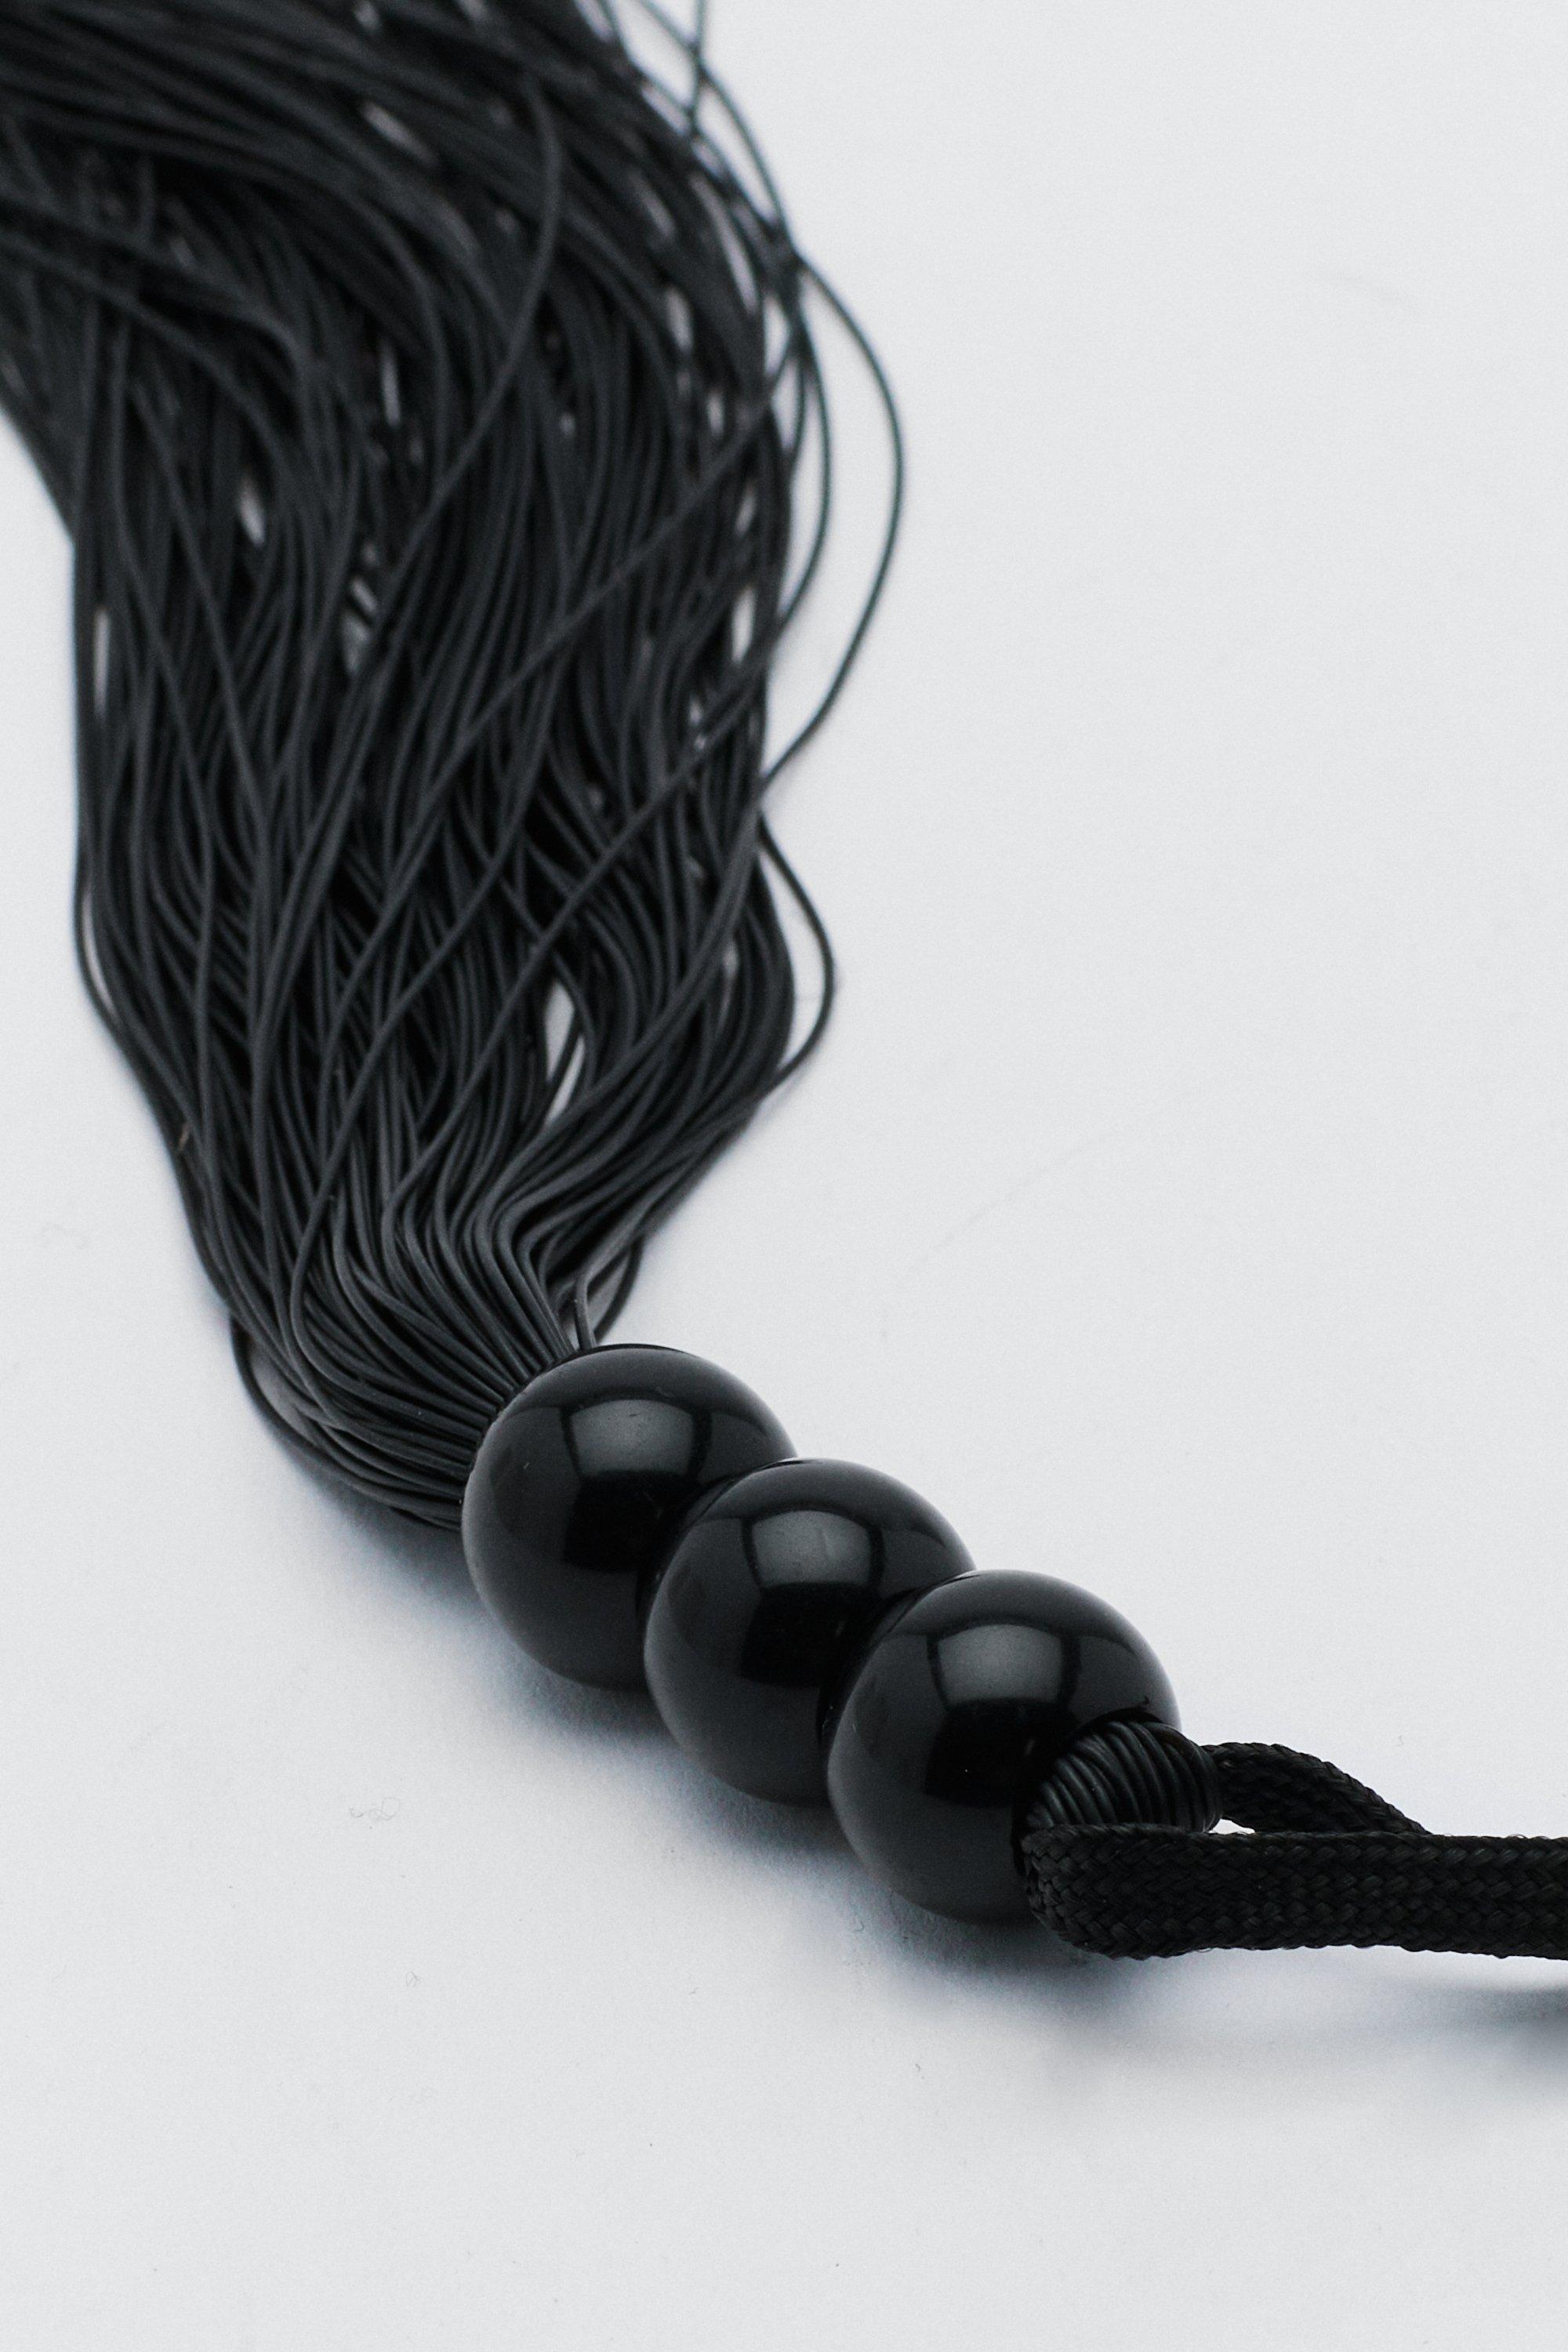 S&M Small Rubber Whip: Black - EasyToys